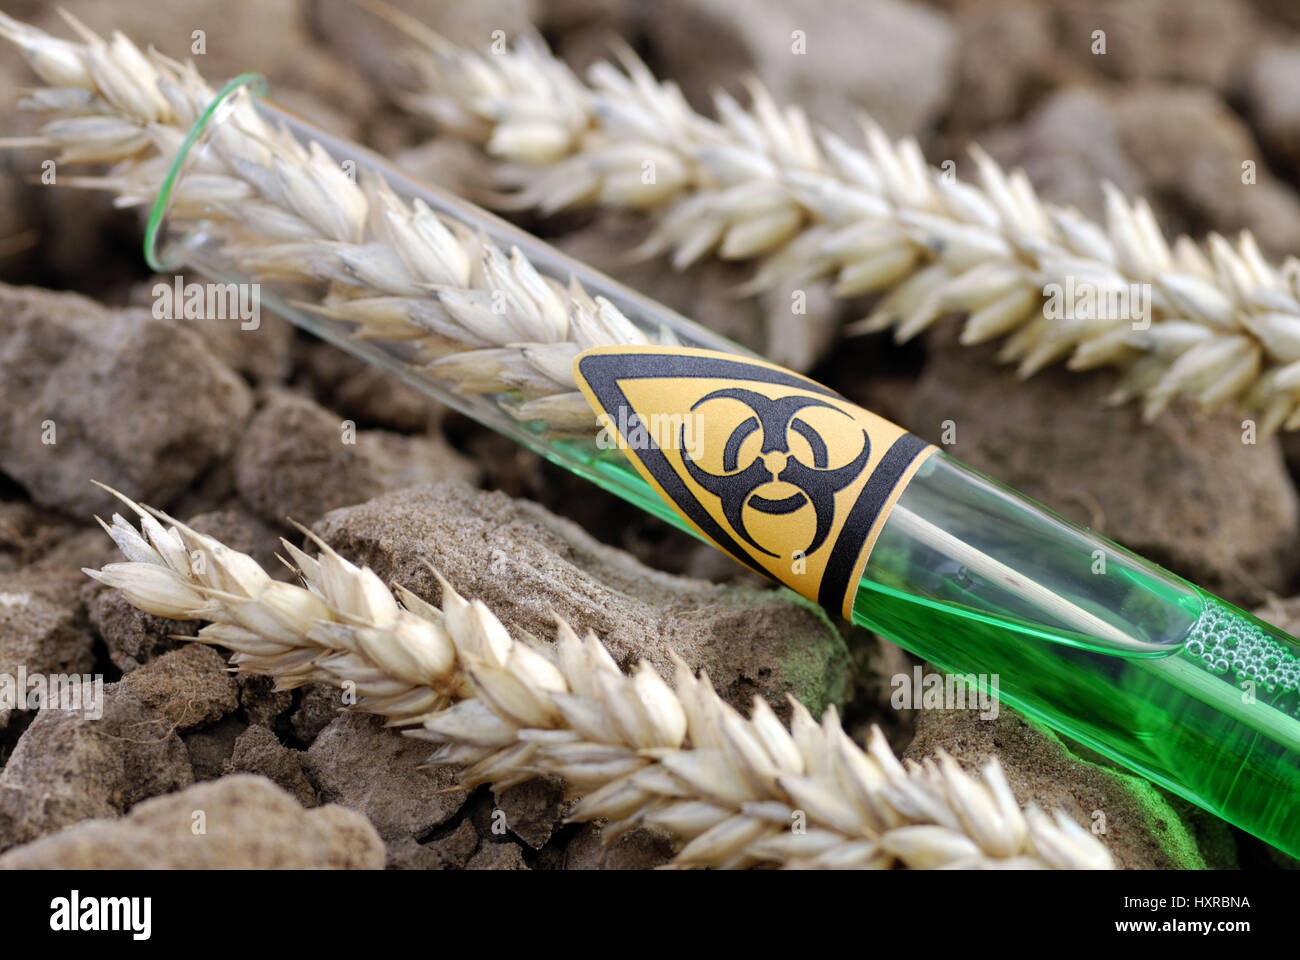 Tubo de ensayo con el símbolo de peligro de biología y genética del trigo, oído el trigo, Reagenzglas mit Biogefährdung-Symbol und Weizenähre, Gen-Weizen Foto de stock